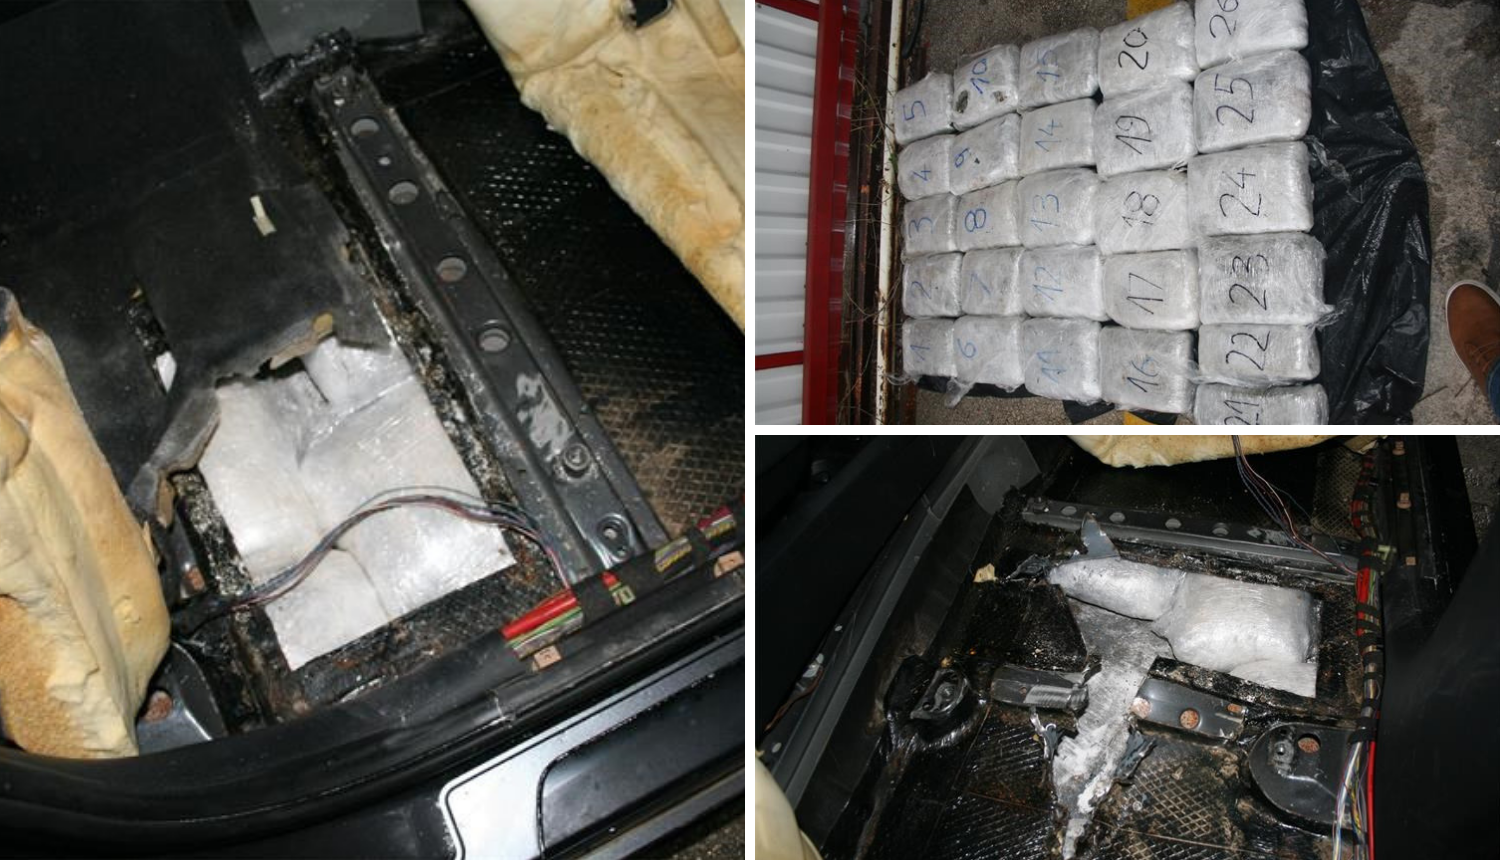 Pronašli 26 paketa marihuane u autu ispod prednjeg sjedišta